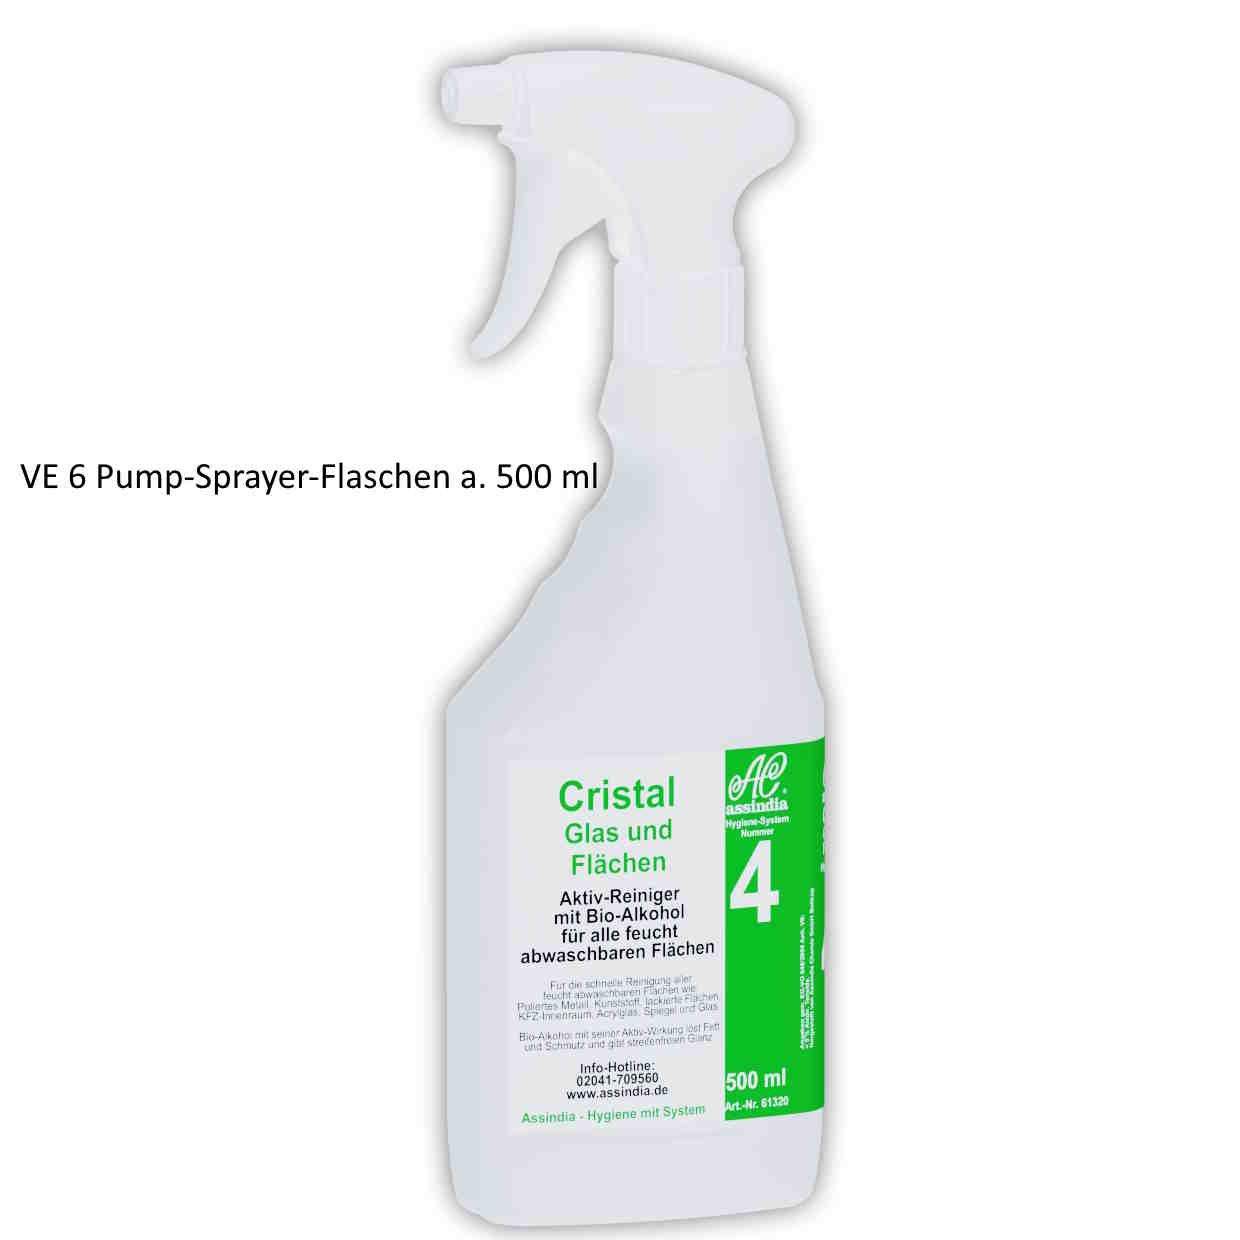 Cristal Glas und Flächen Reiniger Pump-Sprayer-Flasche